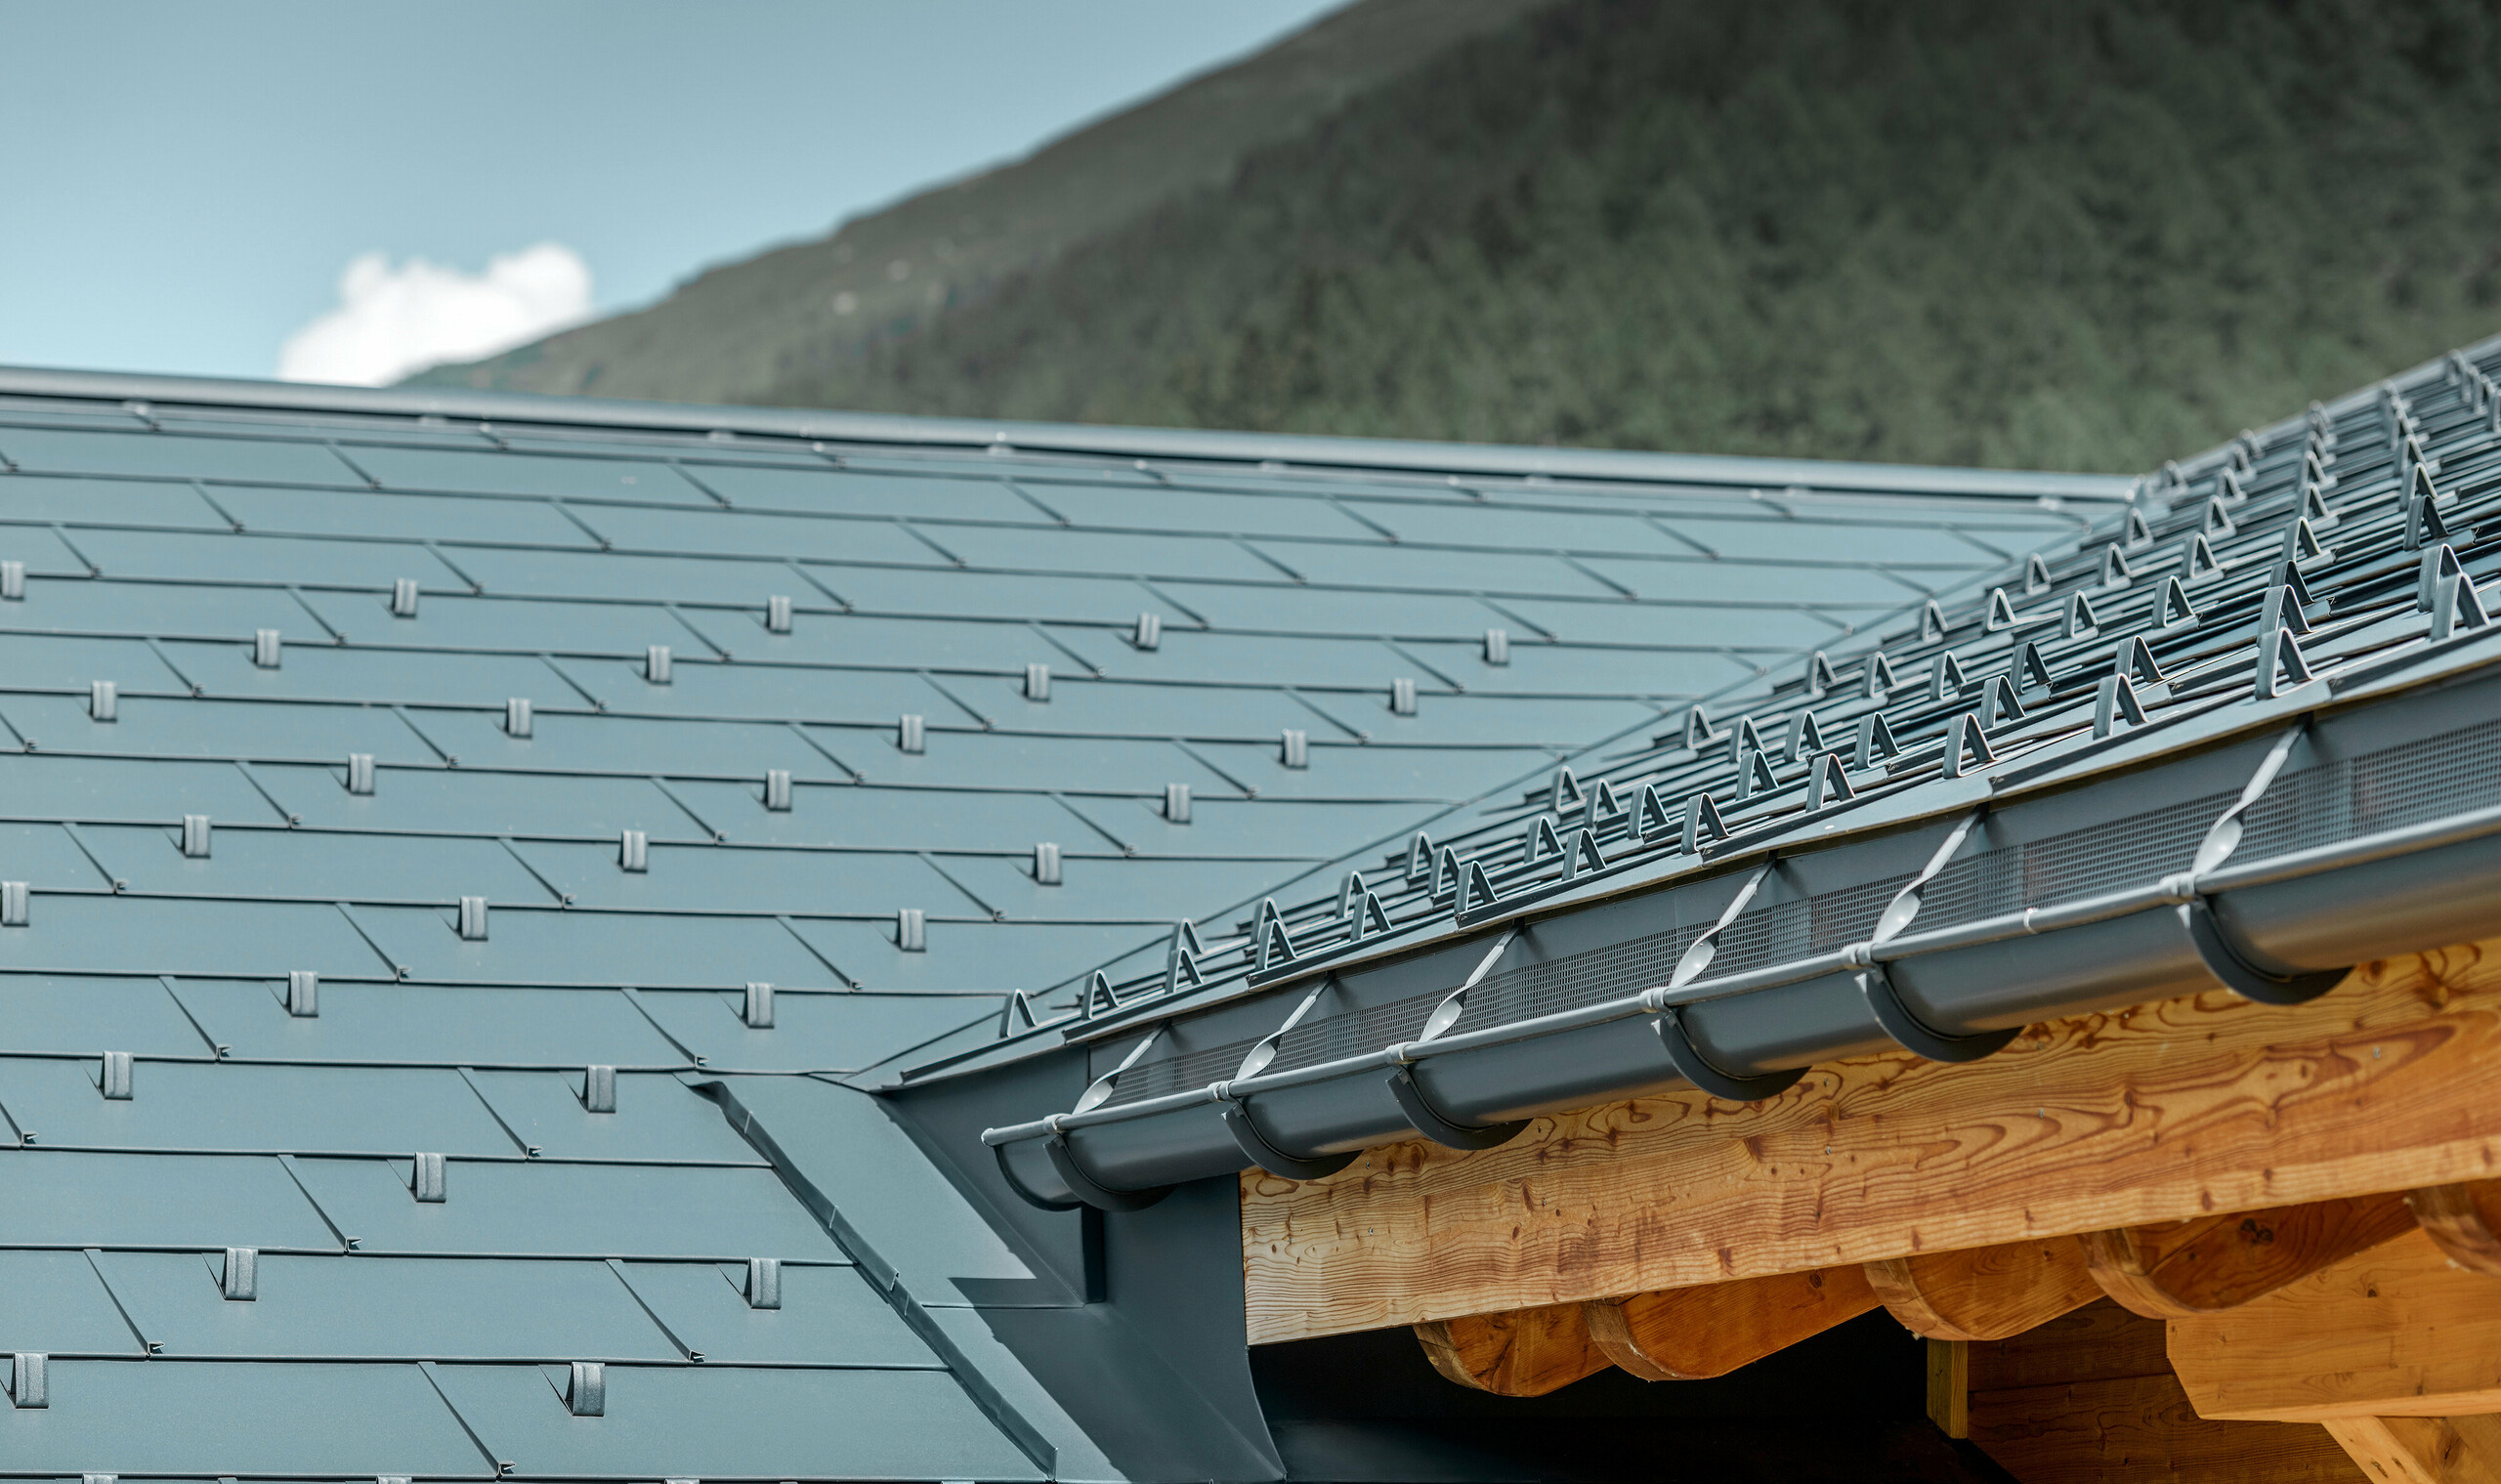 Társasház felújítása FX.12 tetőfedő panellel P.10 antracit színben